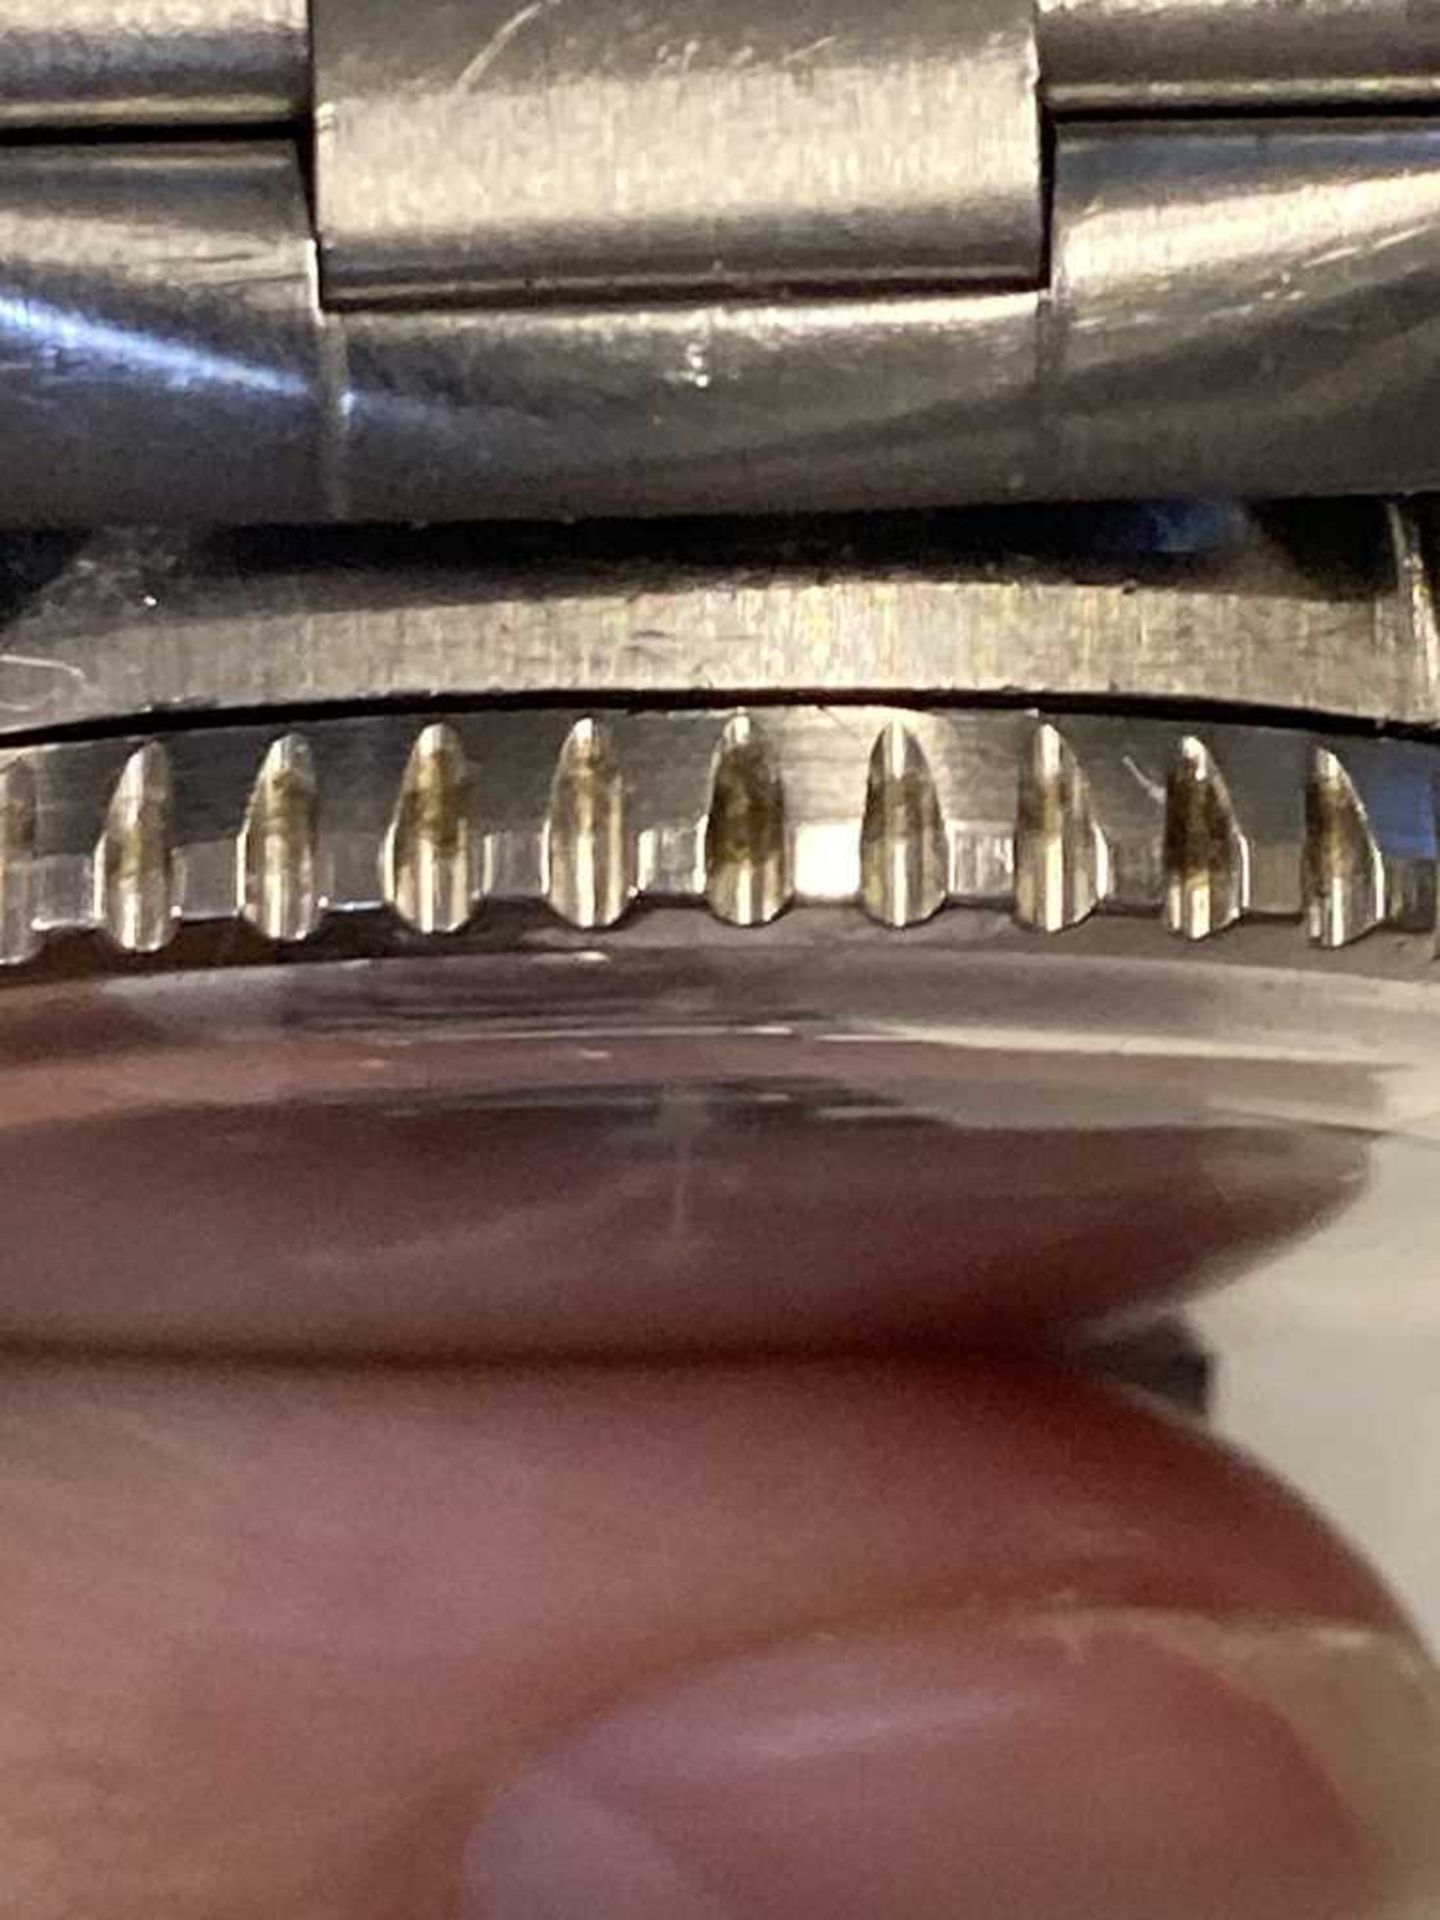 Breitling: a gentleman's steel watch - Image 6 of 11